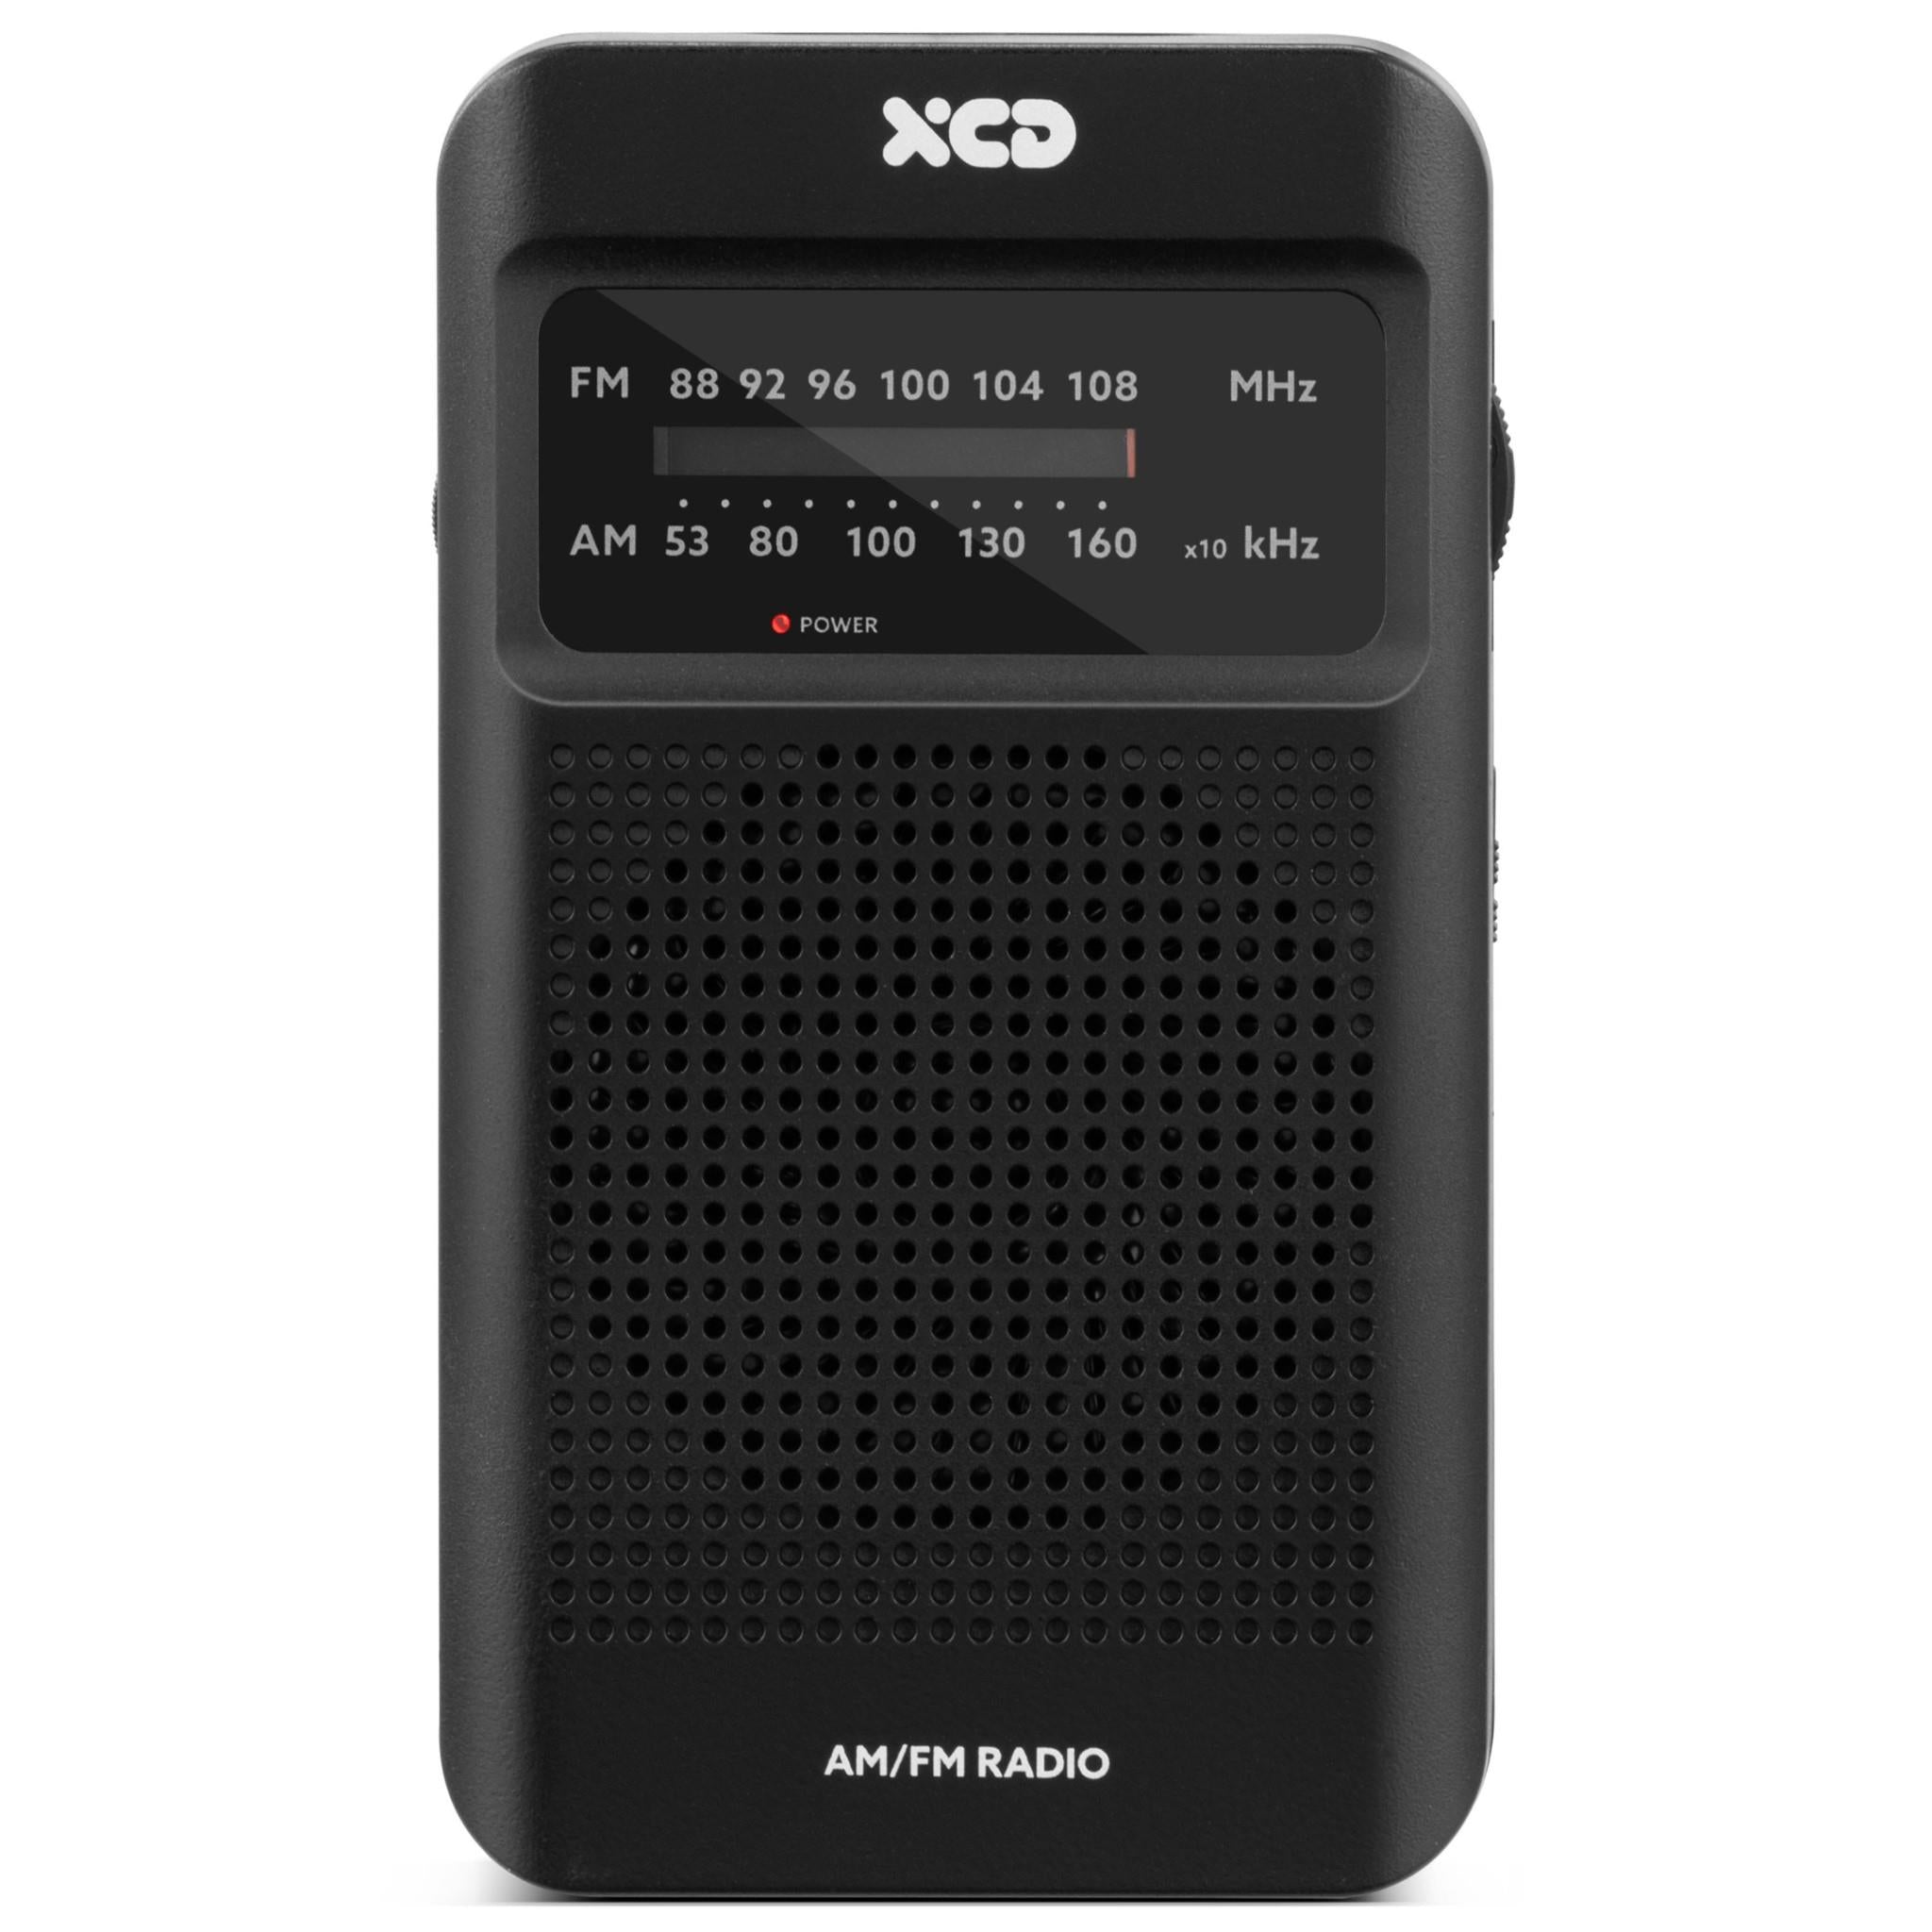 XCD Portable AM/FM Radio JB Hi-Fi